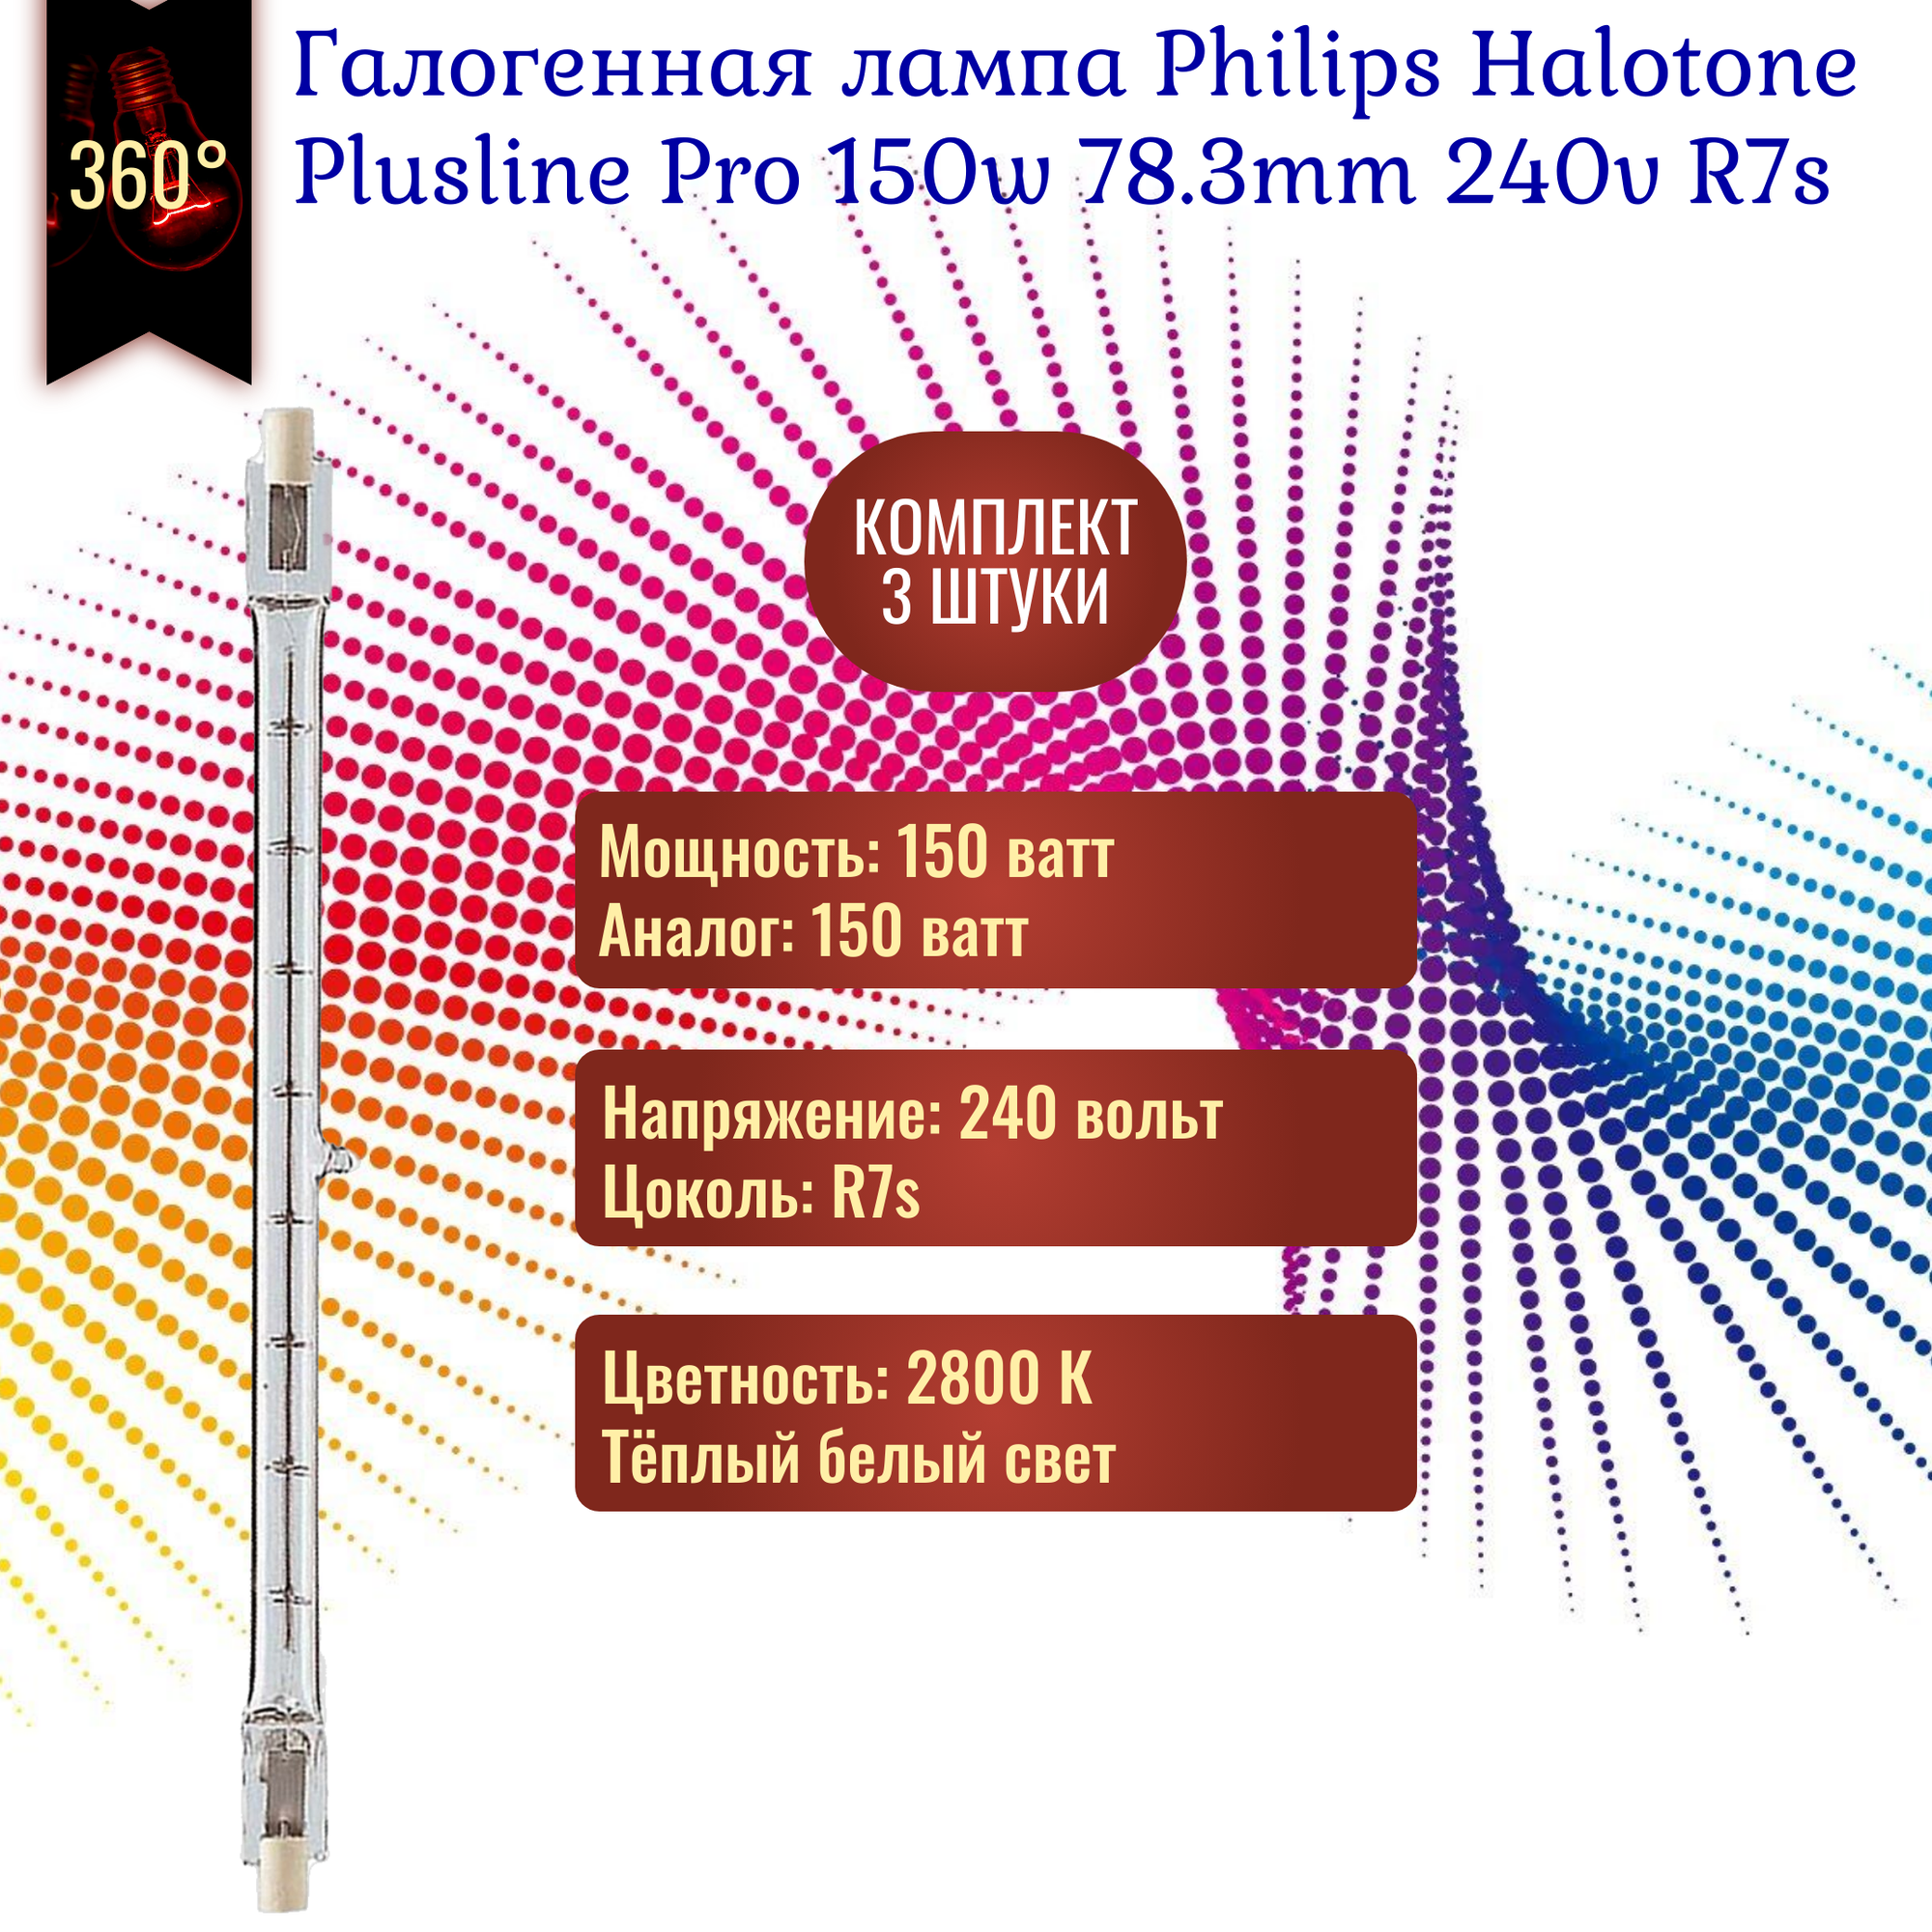 Лампочка Philips Halotone Plusline Pro 150w 230v 78.3mm R7s галогенная, теплый белый свет / 3 штуки